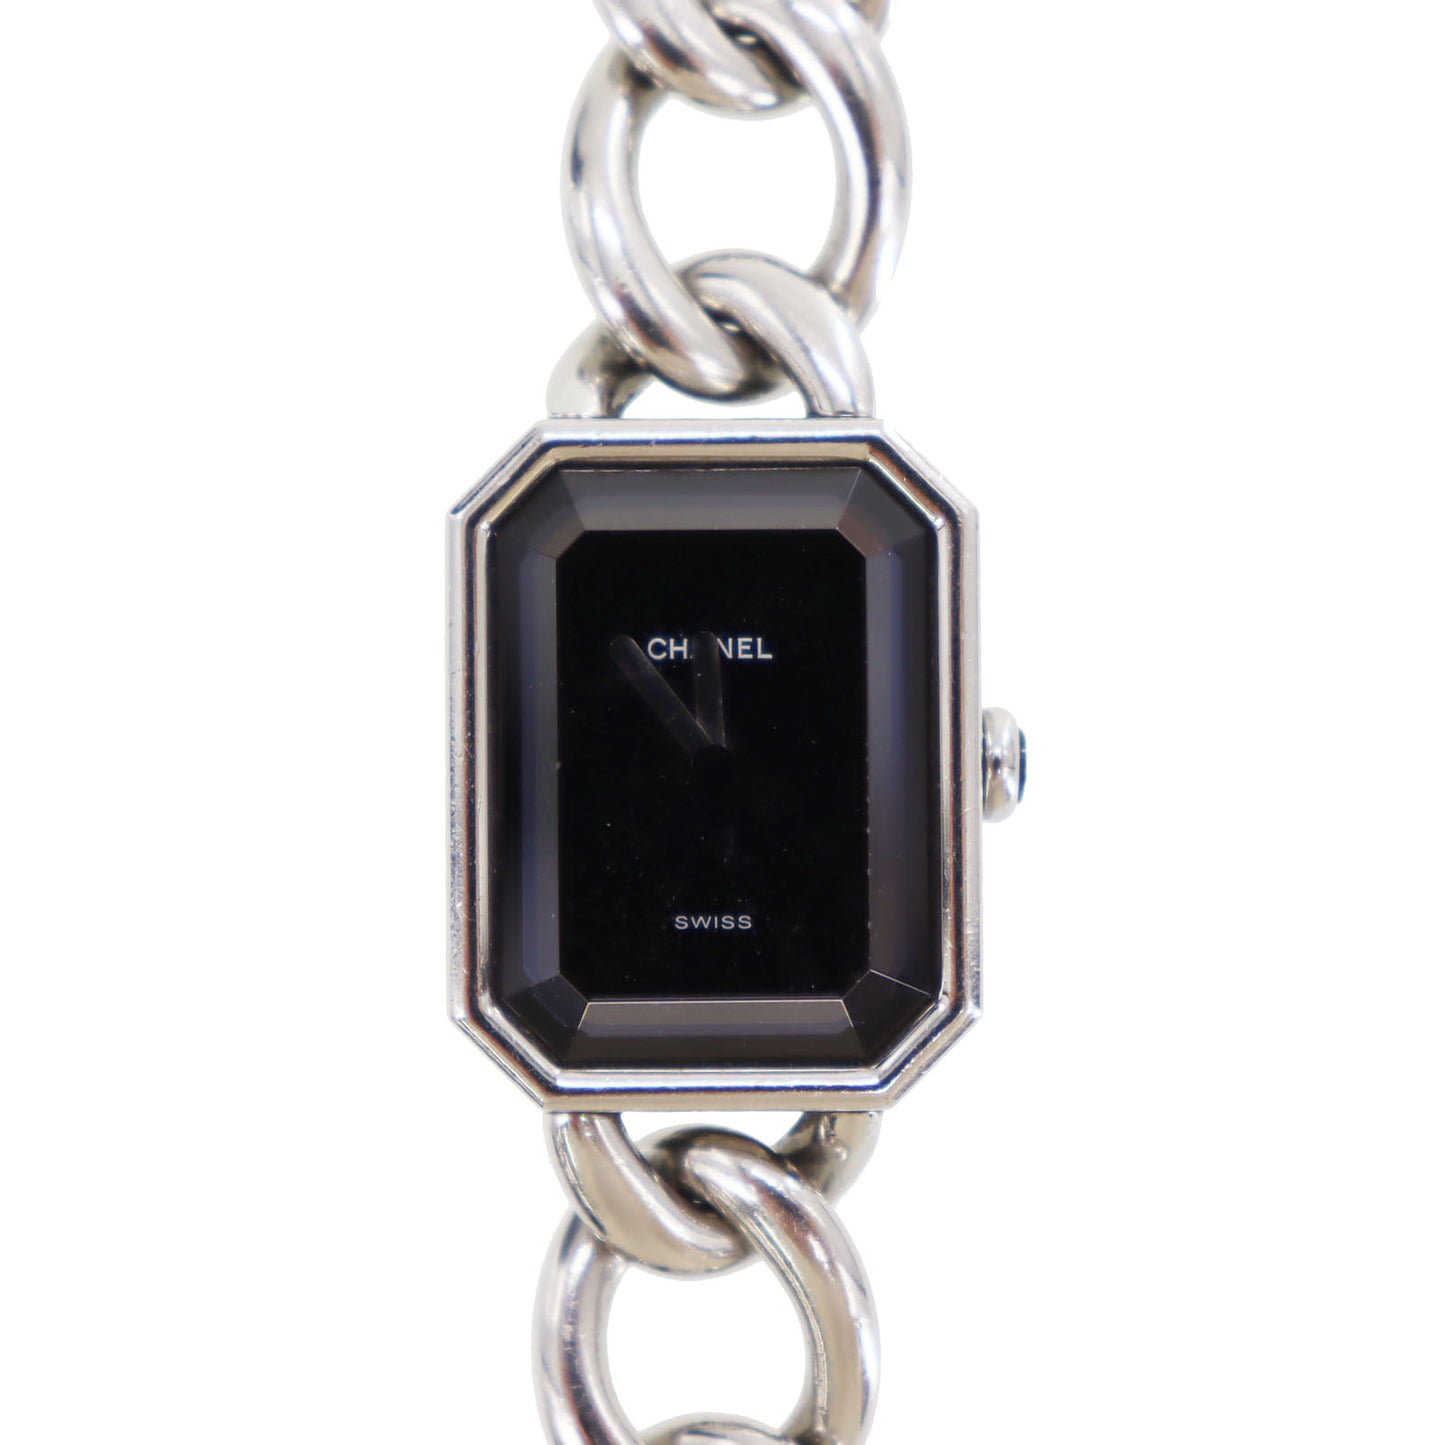 CHANEL Premiere Discontinued Wristwatches M Silver Quartz #CG736